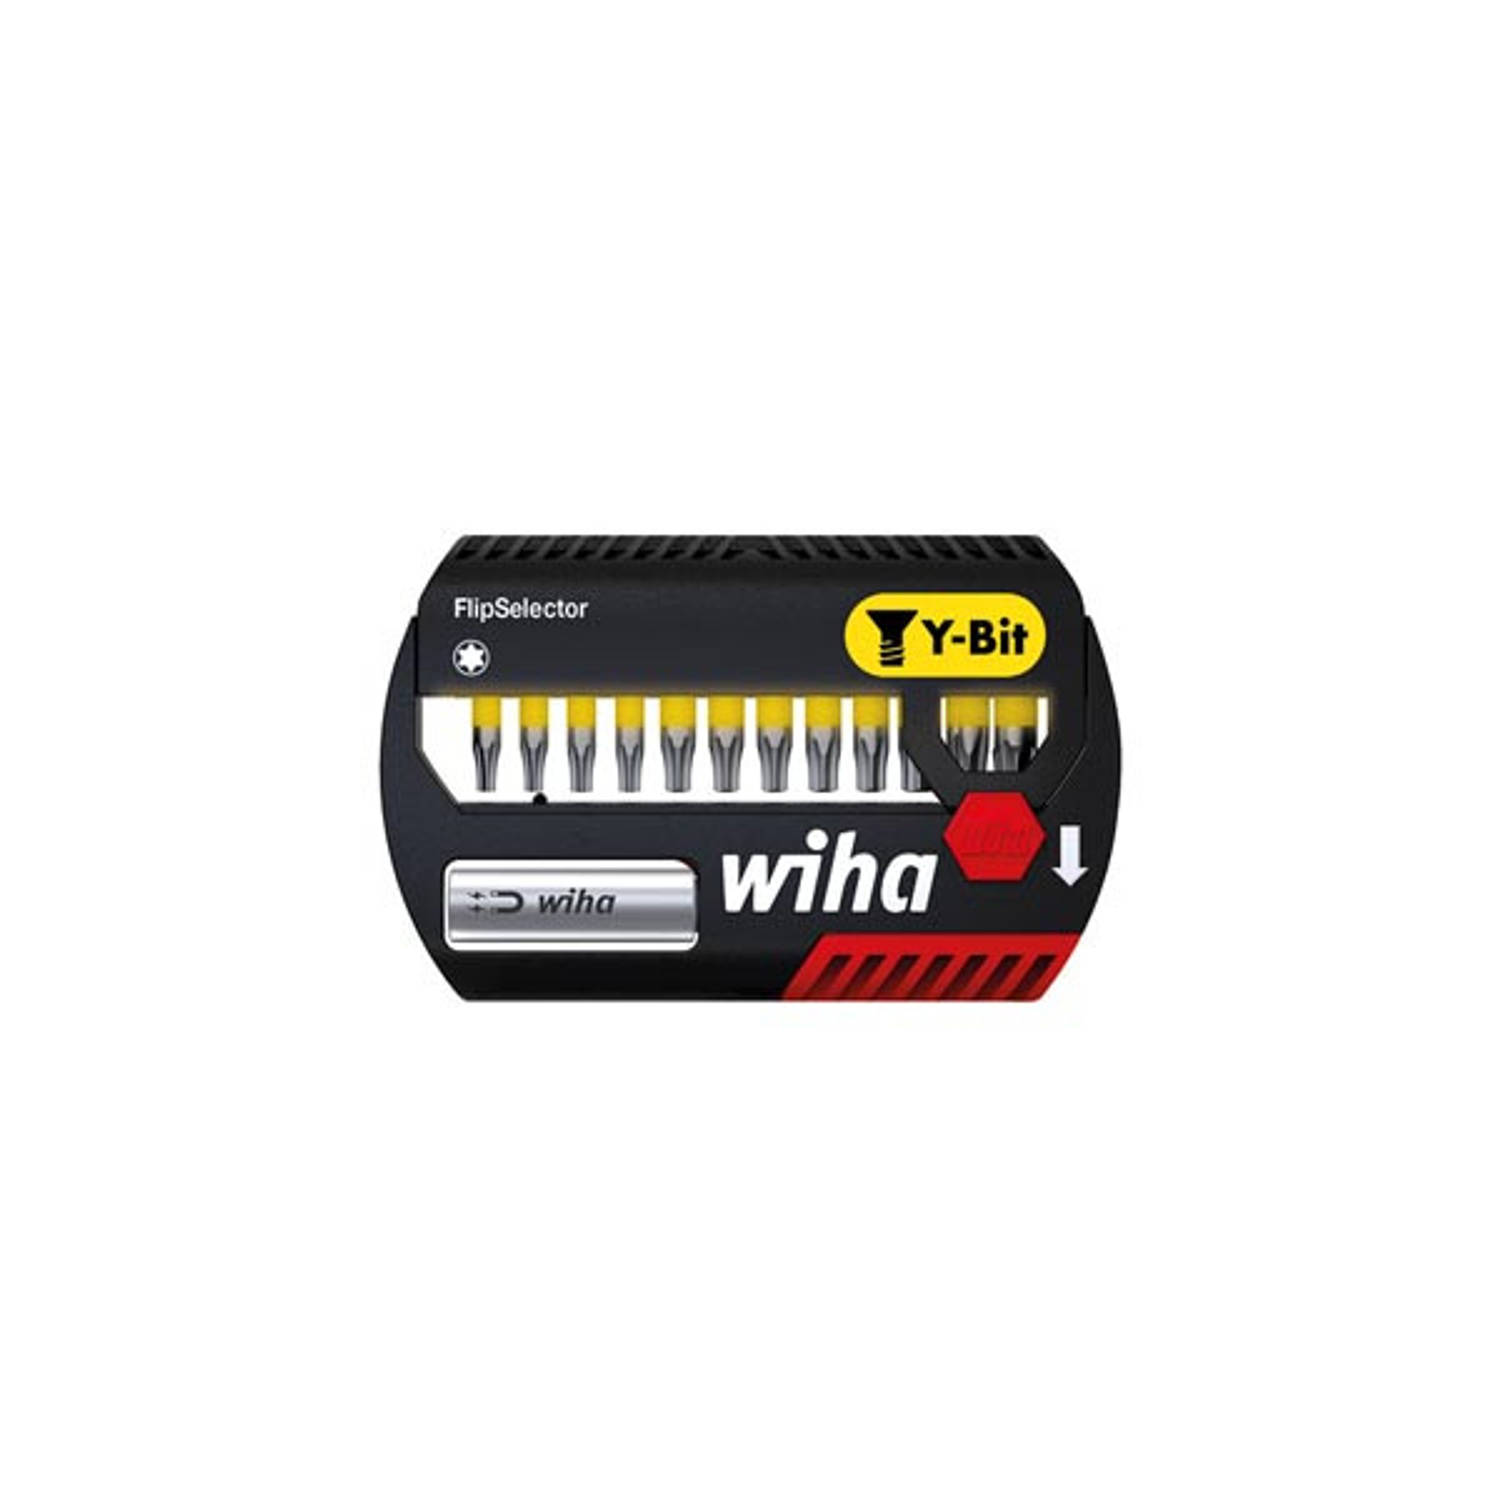 Wiha Bitset FlipSelector Y-bit 25 mm TORX® 13-delig 1-4 (41828)